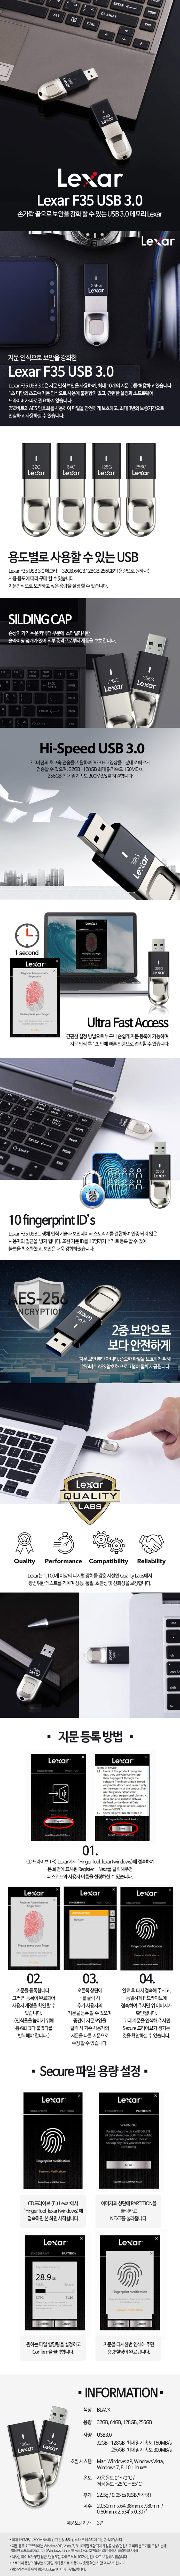 렉사 Lexar JumpDrive 지문 보안 F35 USB 3.0 128GB 70,900원 - 렉사 디지털, PC저장장치, USB, USB 바보사랑 렉사 Lexar JumpDrive 지문 보안 F35 USB 3.0 128GB 70,900원 - 렉사 디지털, PC저장장치, USB, USB 바보사랑